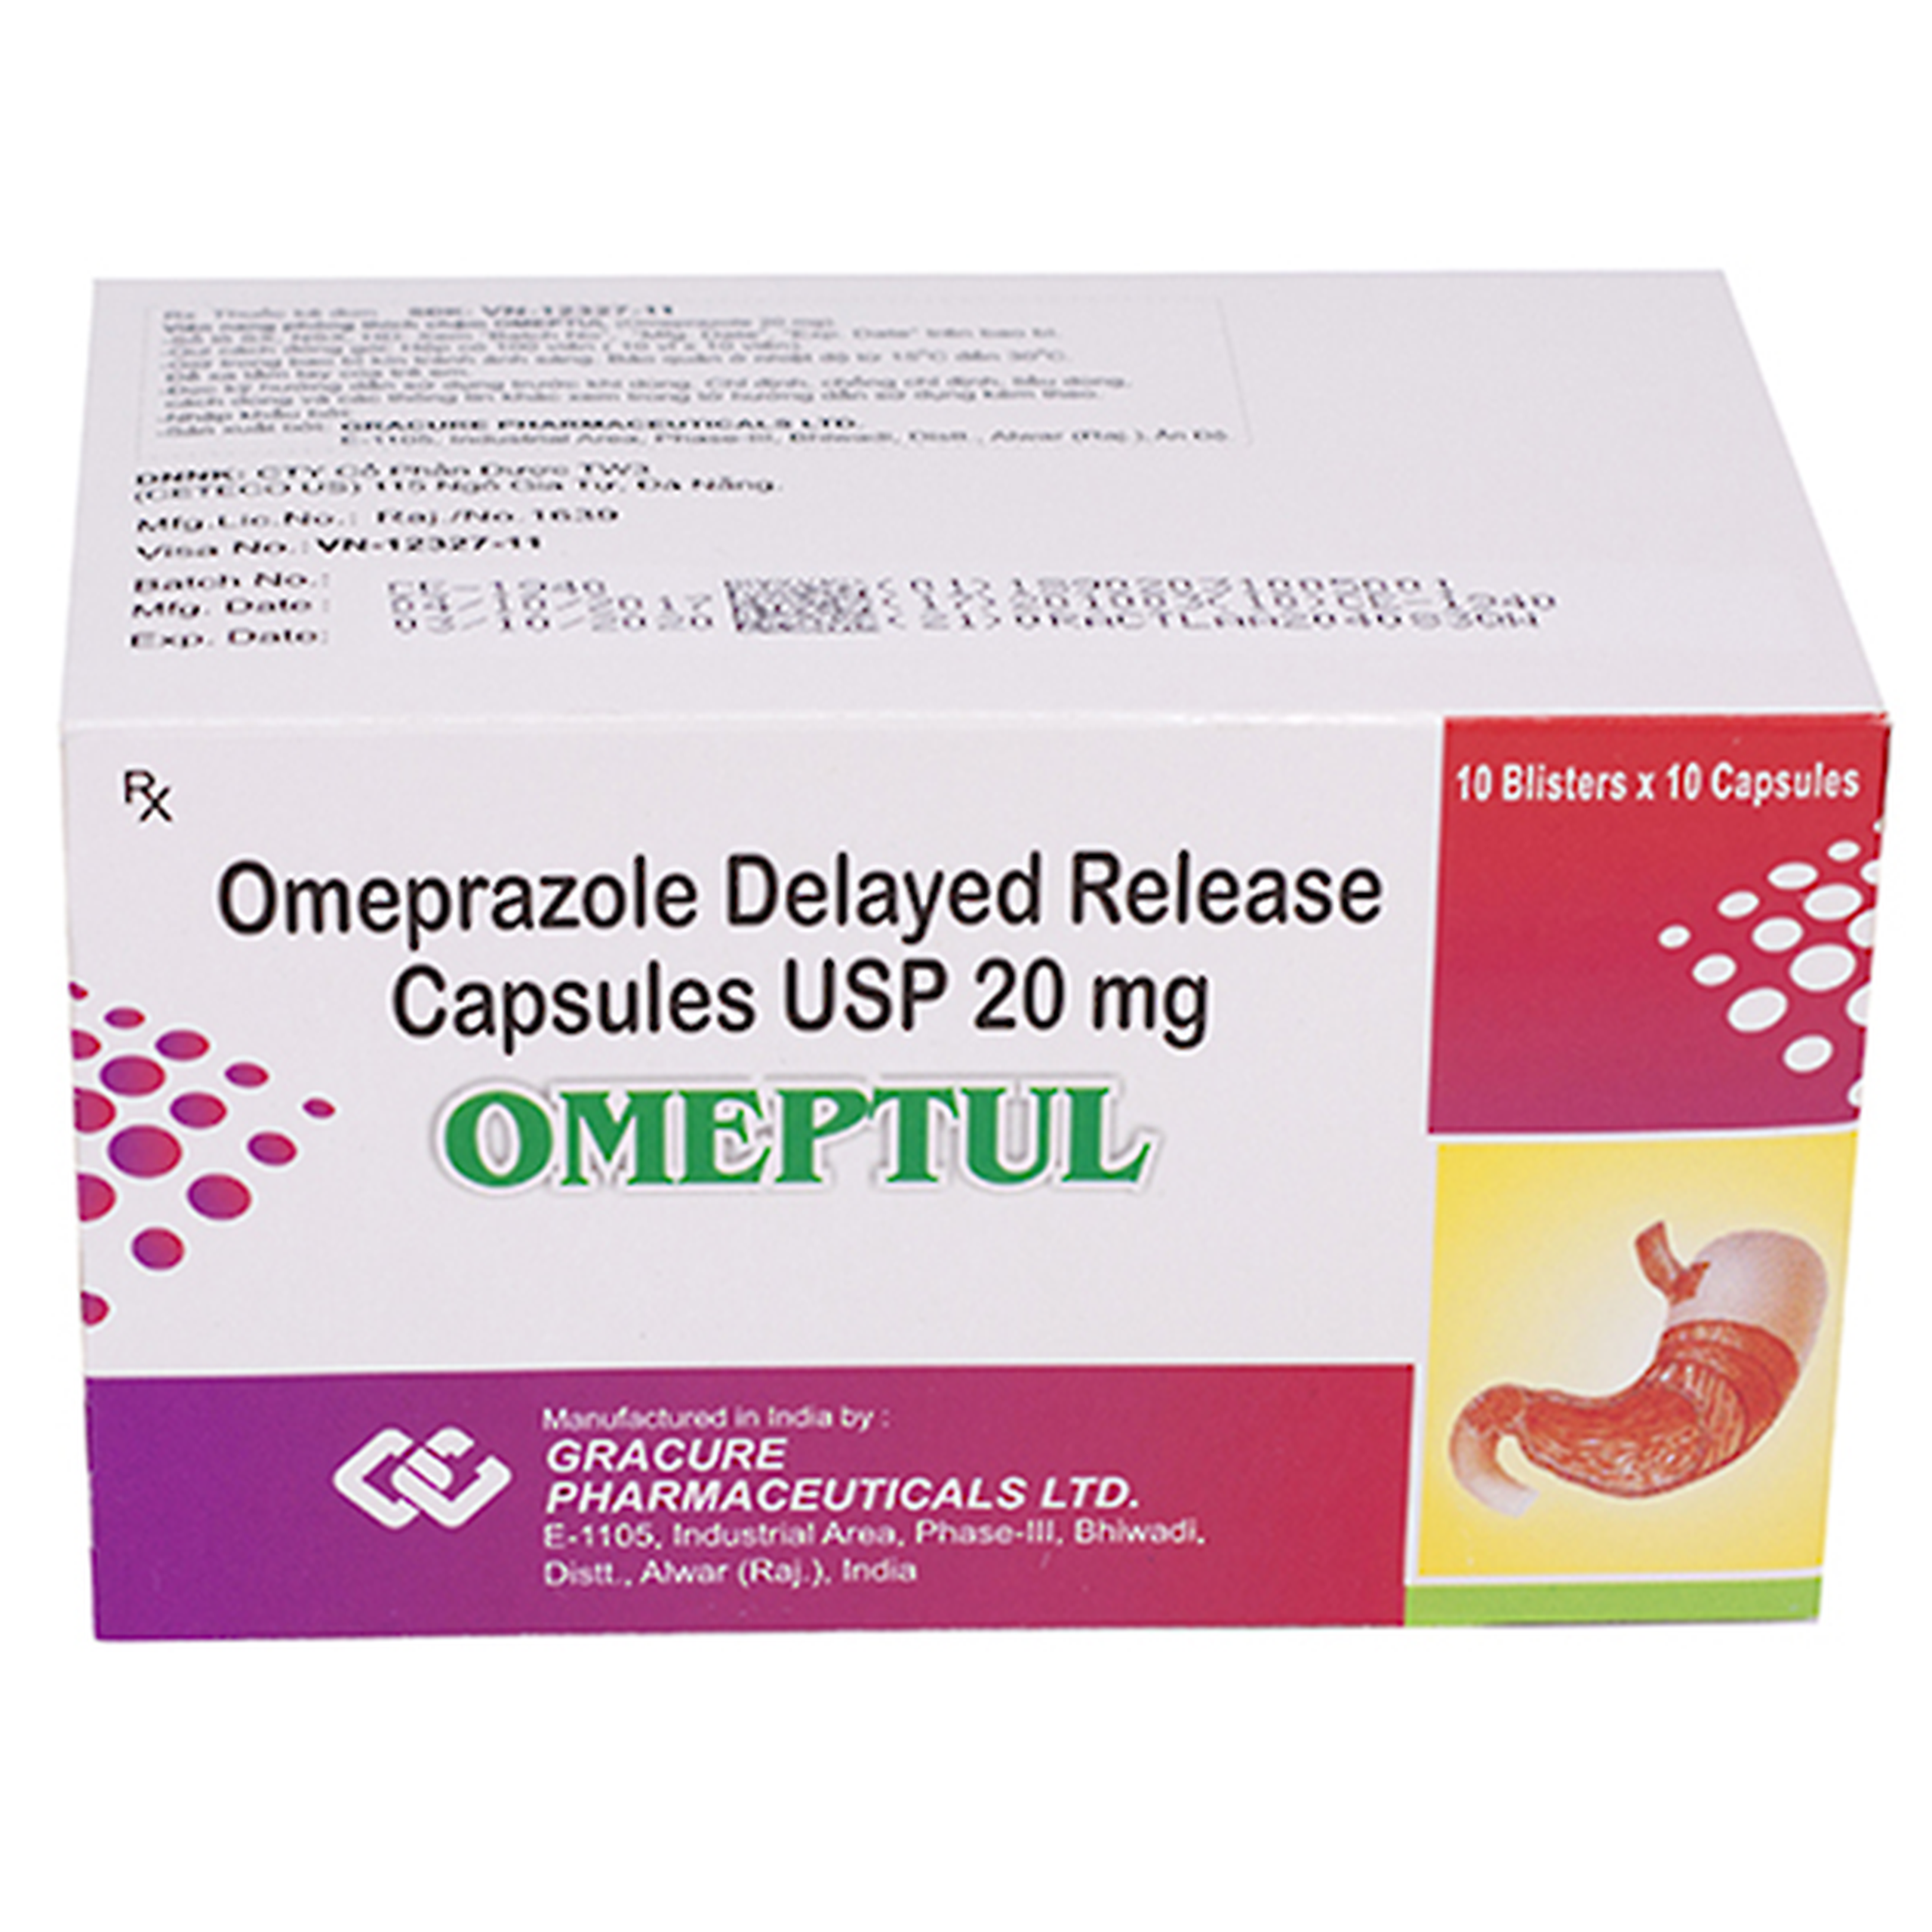 Thuốc Omeptul 20mg Gracure điều trị trào ngược dịch dạ dày - thực quản, loét dạ dày tá tràng (10 vỉ x 10 viên)